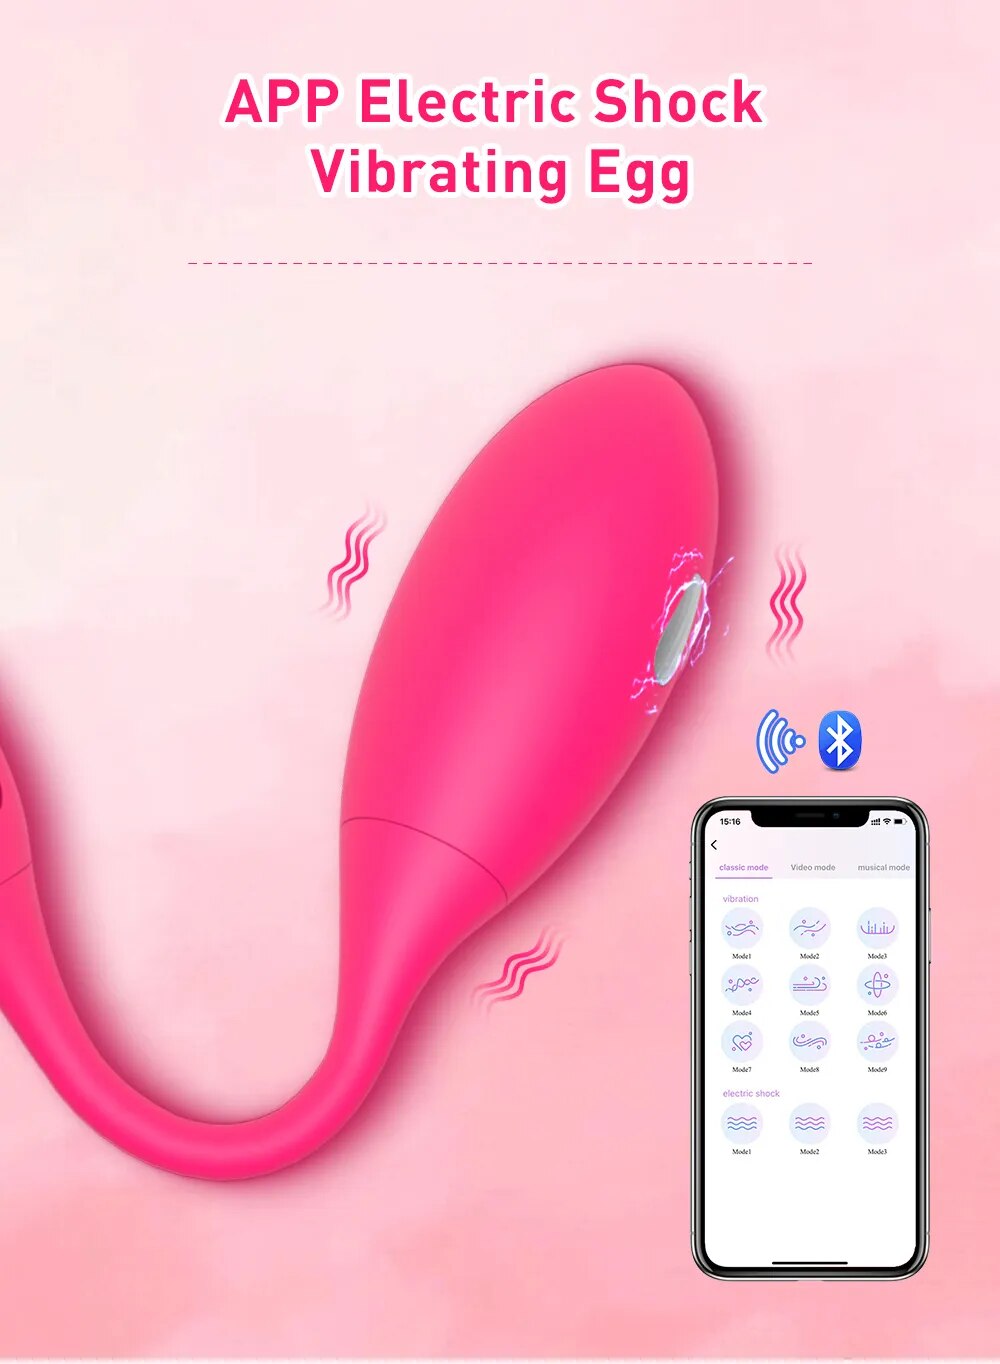 Địa chỉ bán Trứng rung sốc điện Levett điều khiển từ xa qua app bluetooth tốt nhất